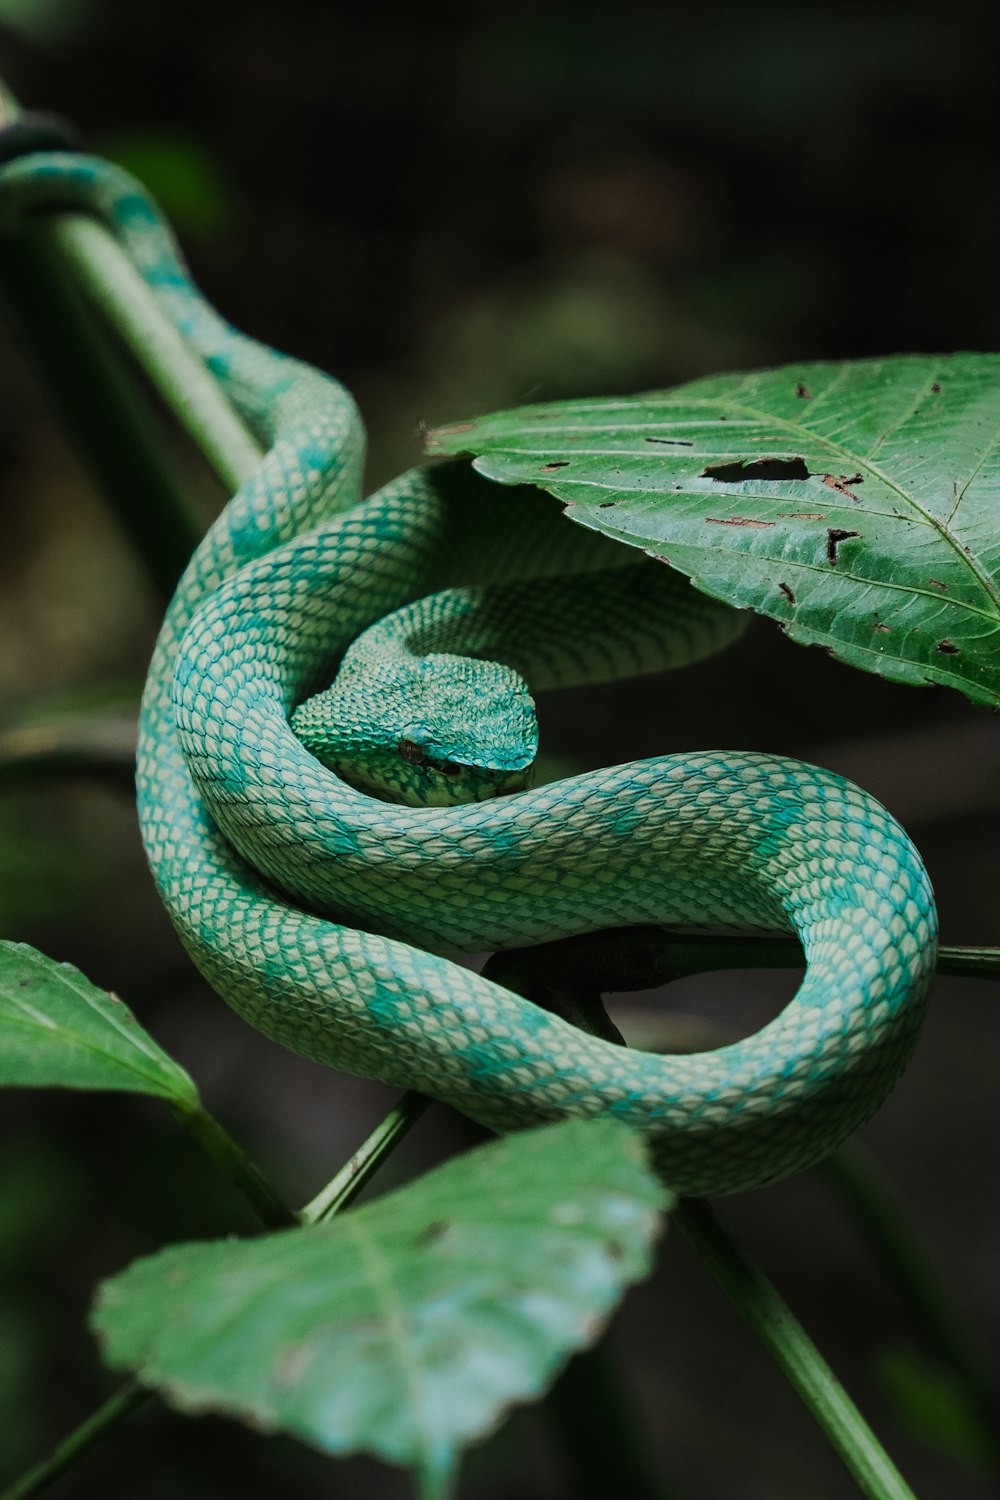 녹색 뱀이 나뭇잎에 웅크리고 있다